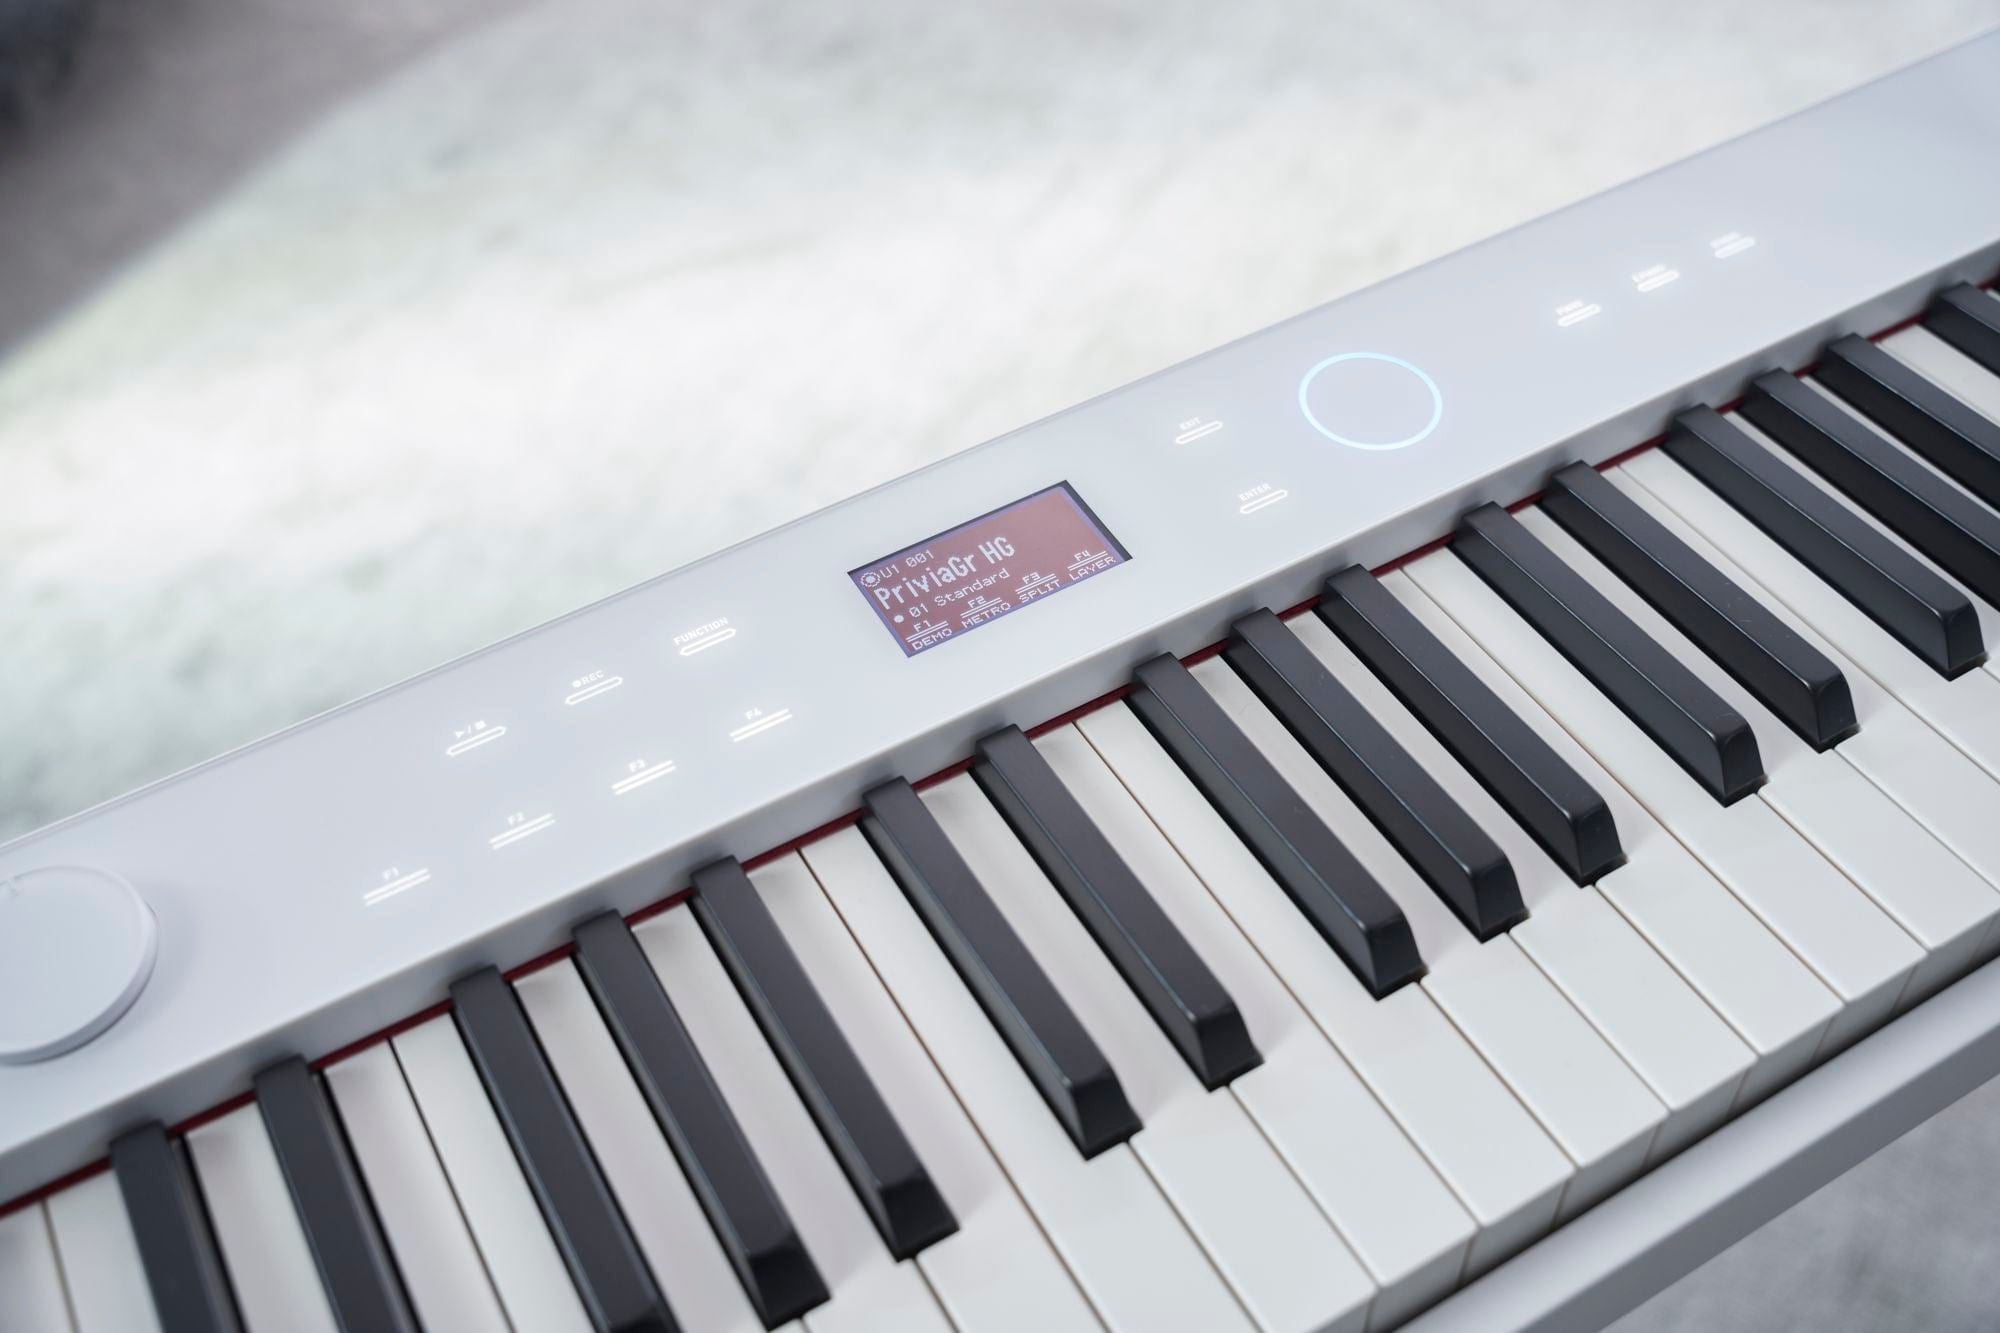 Casio PX-S7000 Digital Piano - White – Kraft Music